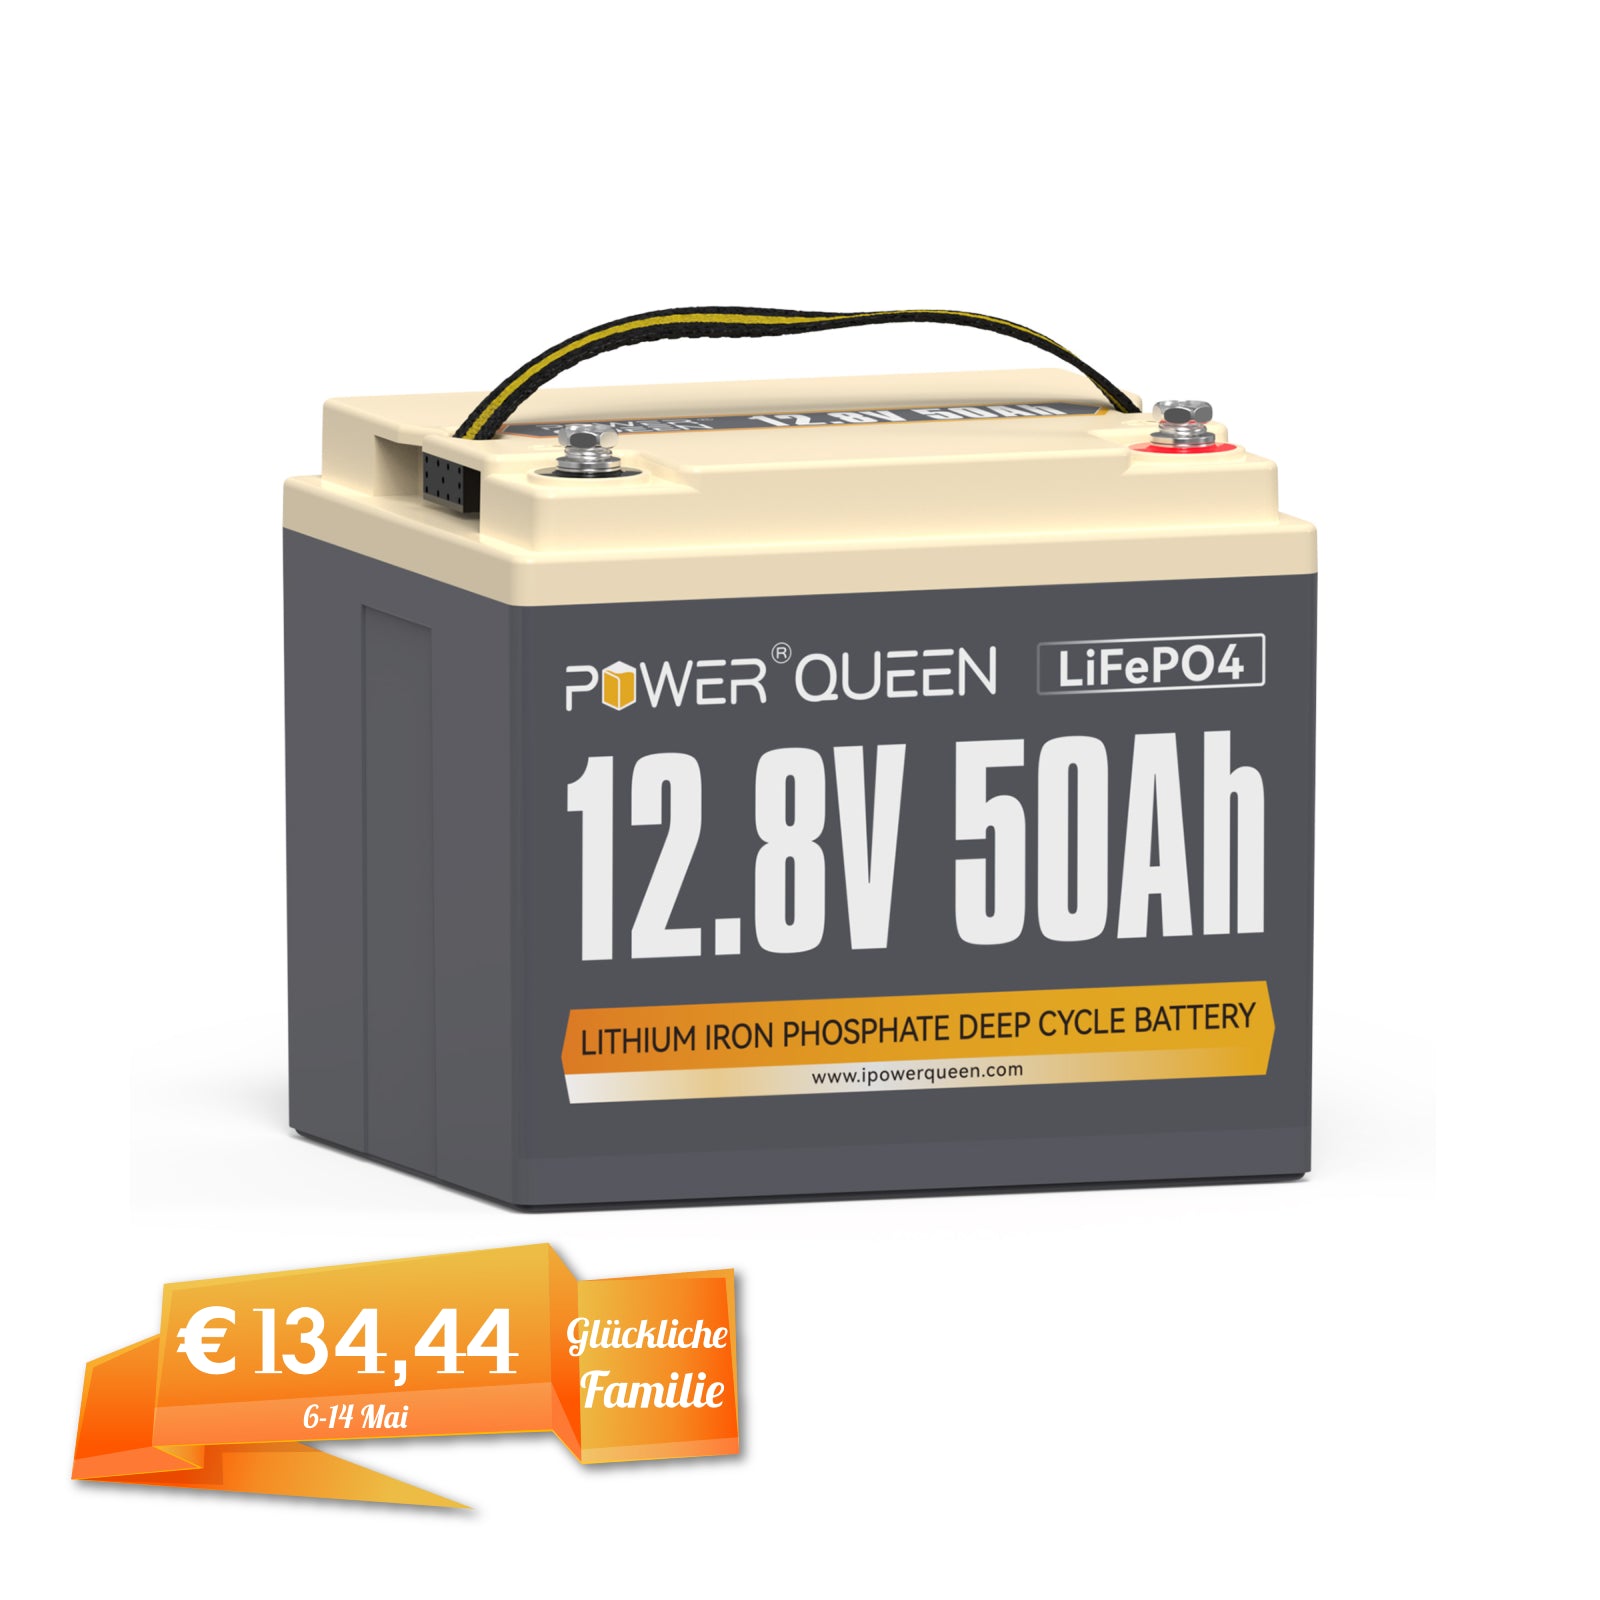 【0% IVA】Batería Power Queen 12V 50Ah LiFePO4, BMS 50A incorporado